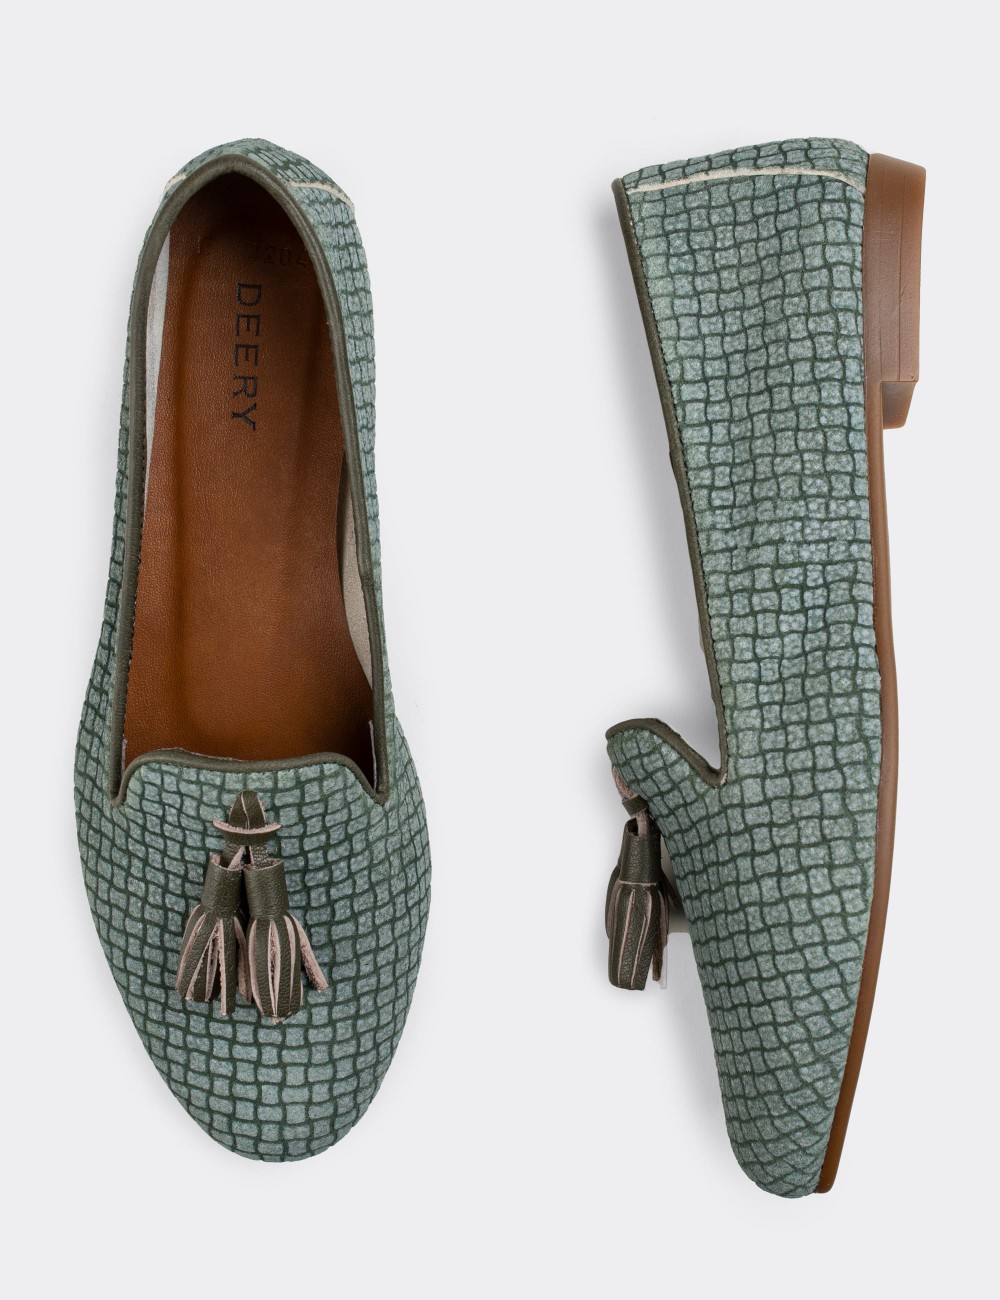 Green Nubuck Leather Loafers  - E3204ZYSLC04